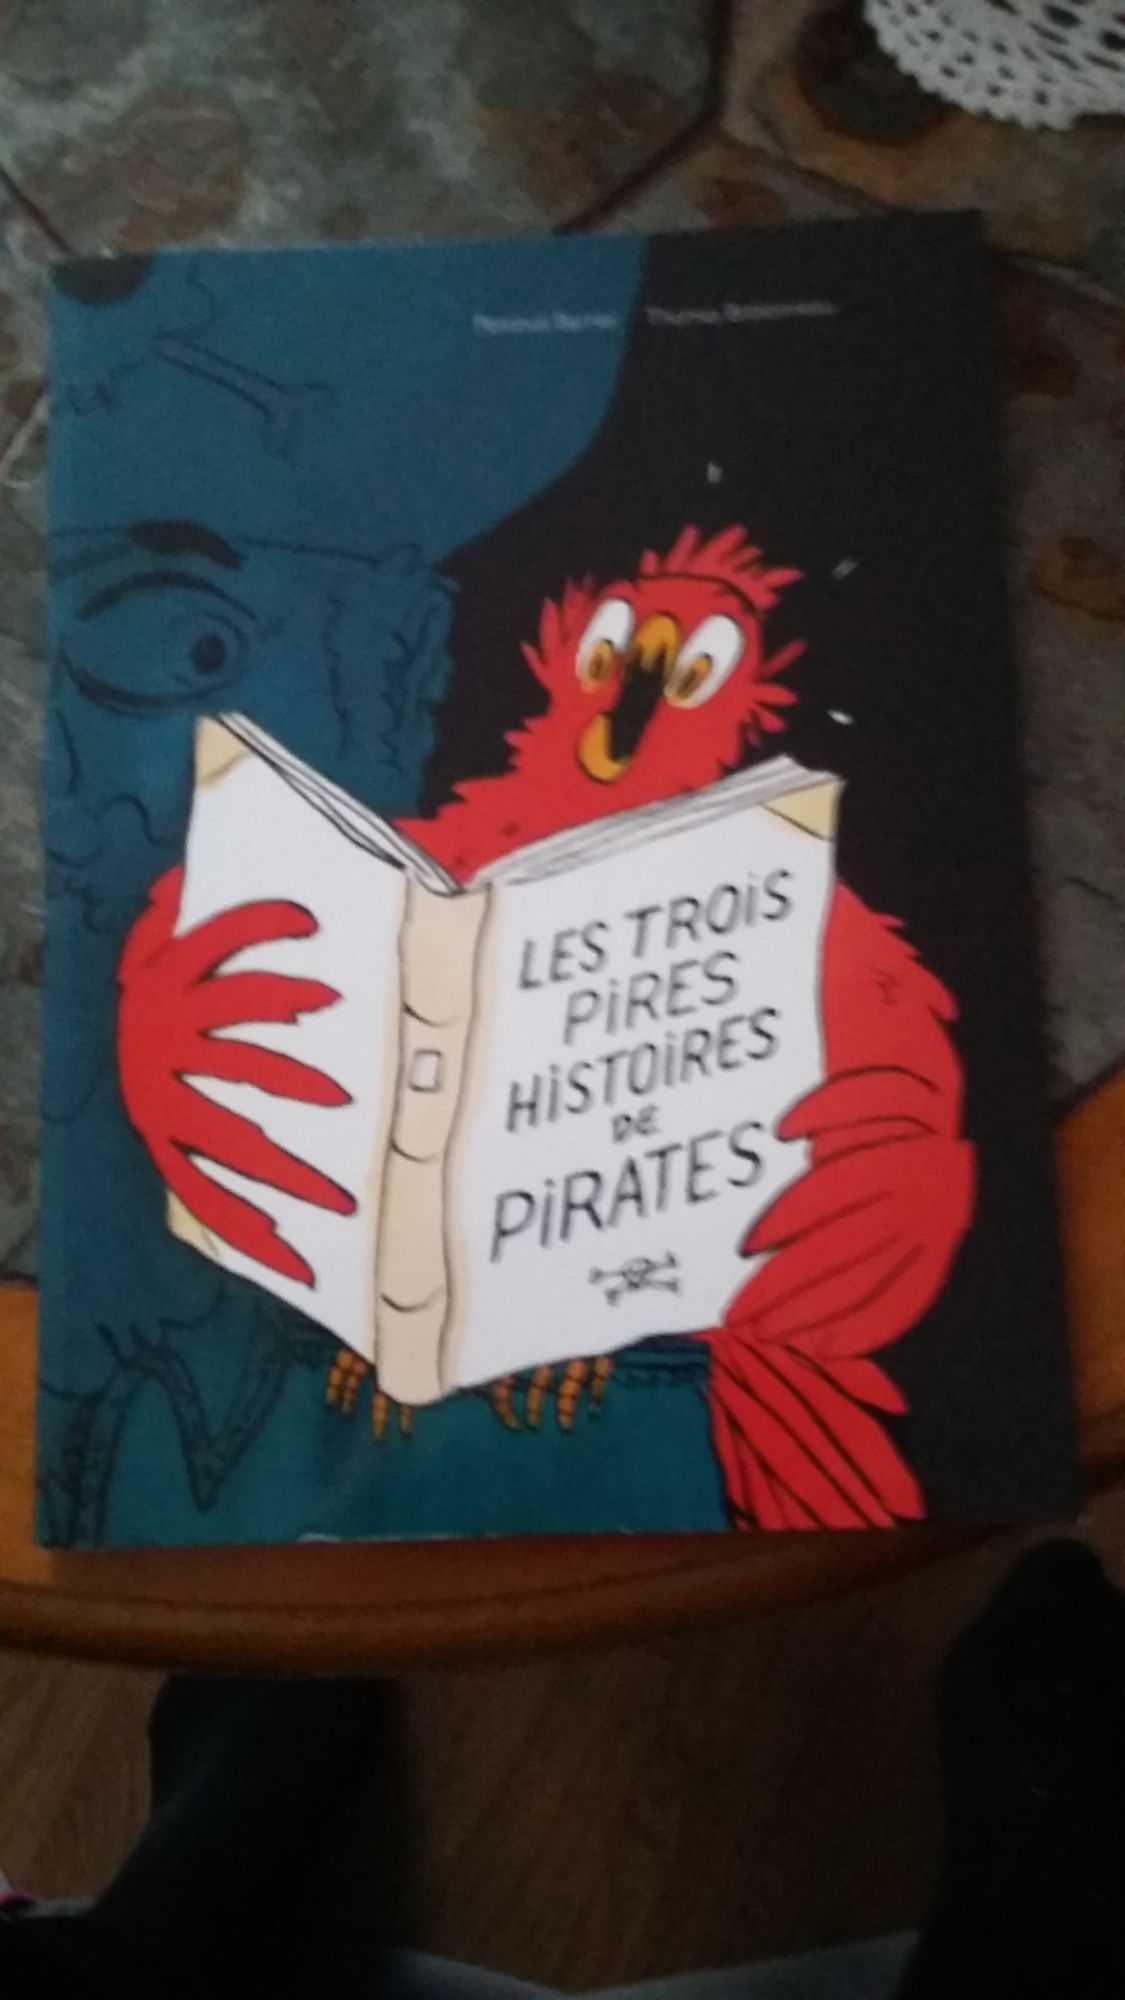 Les 3 pires histoires de Pirates